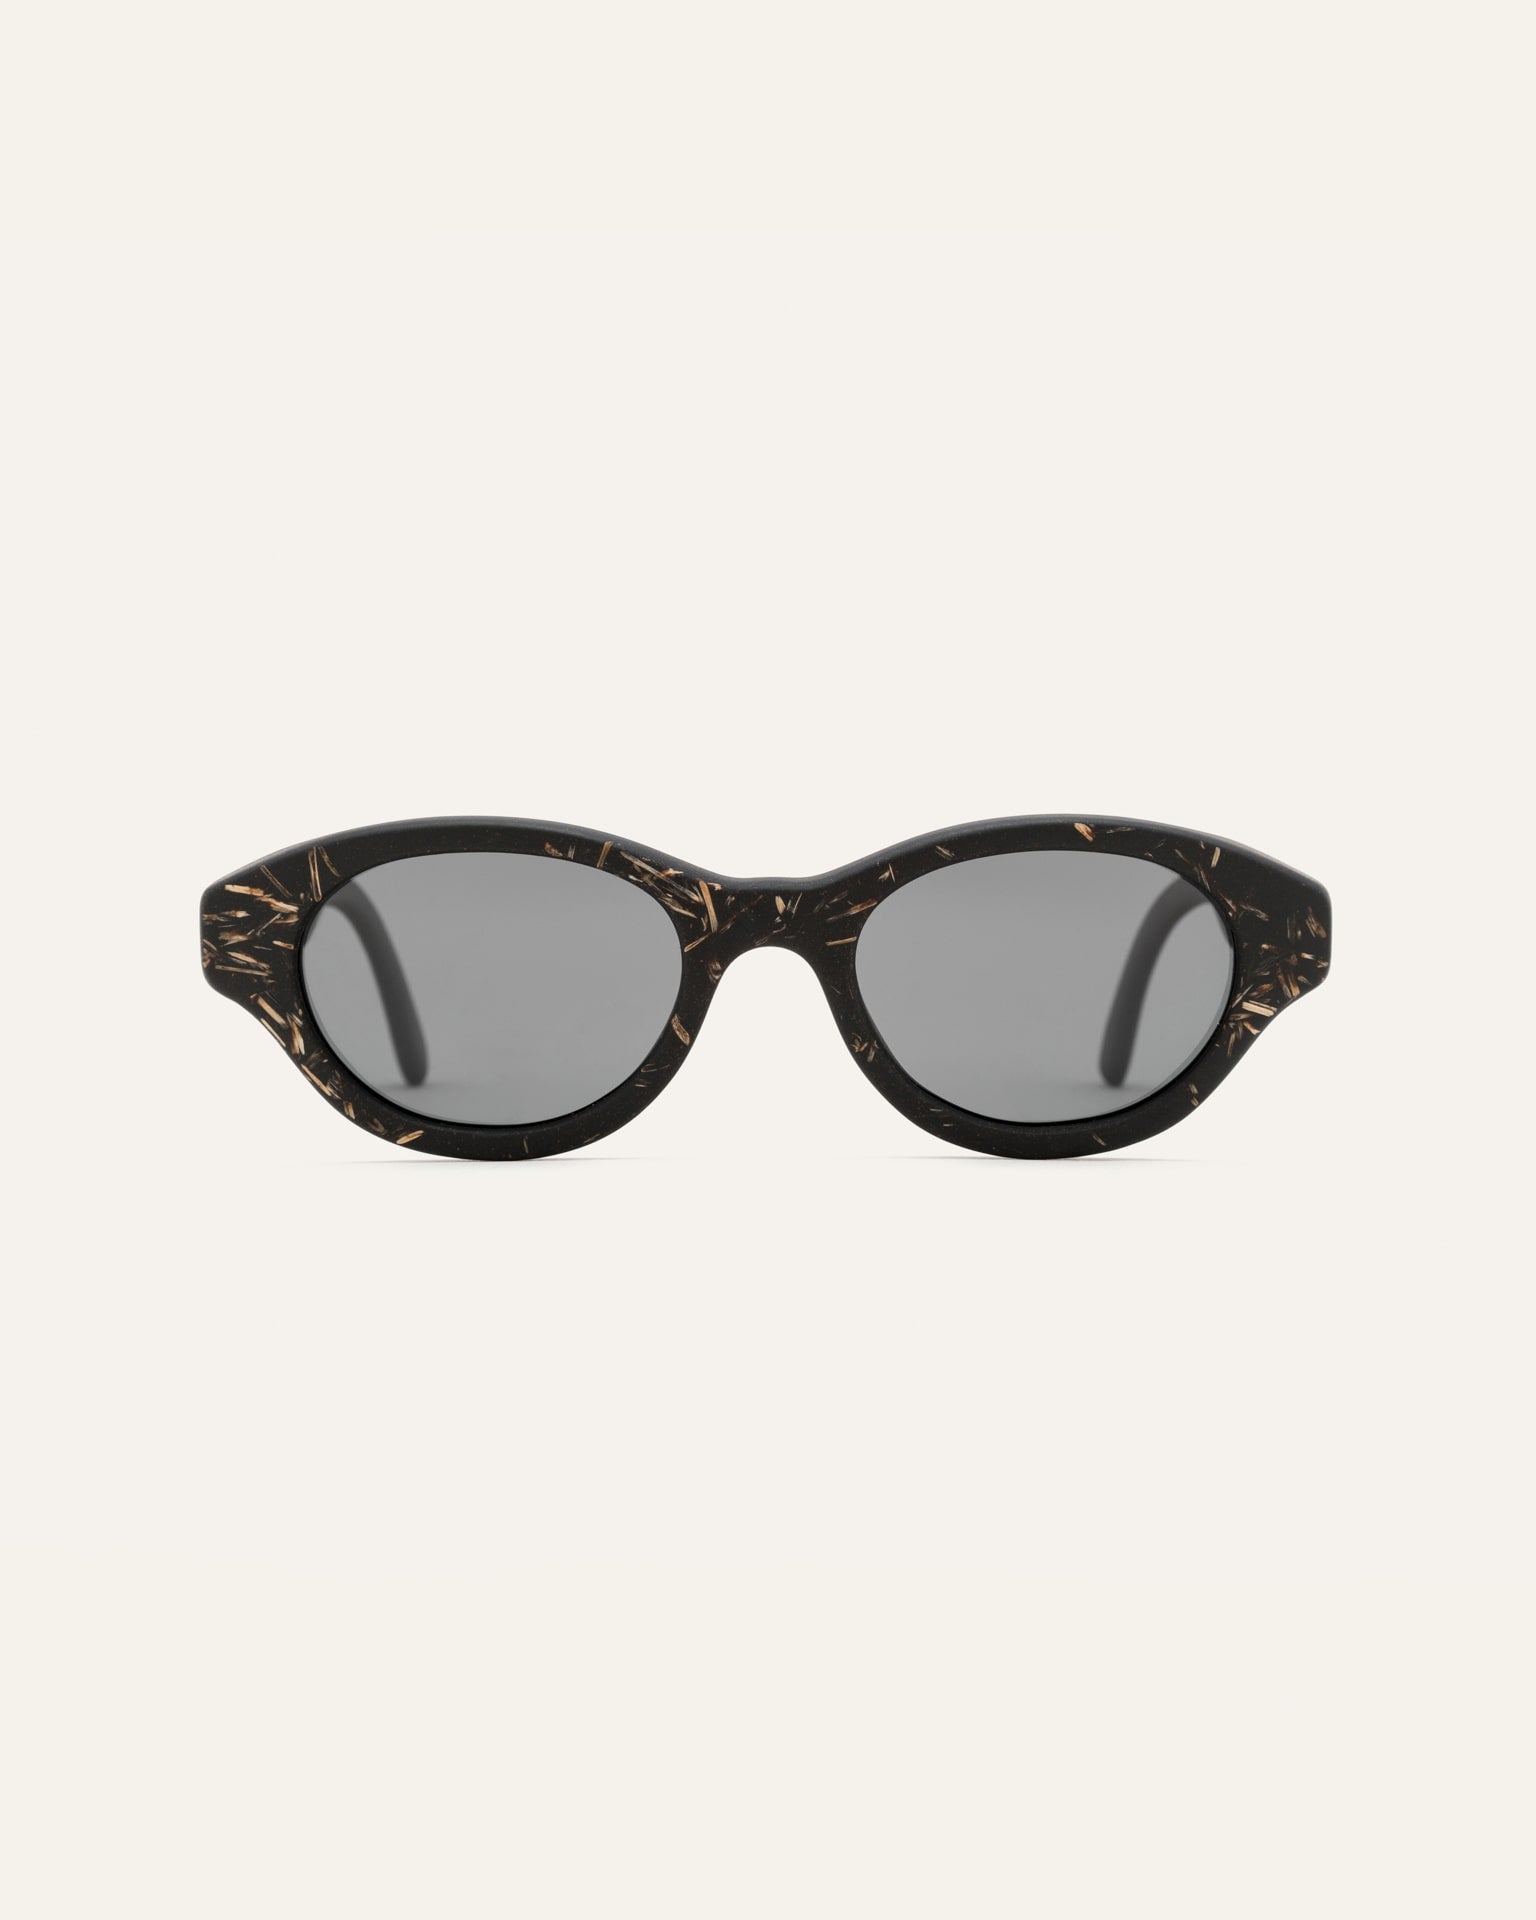 oval-shaped sunglasses